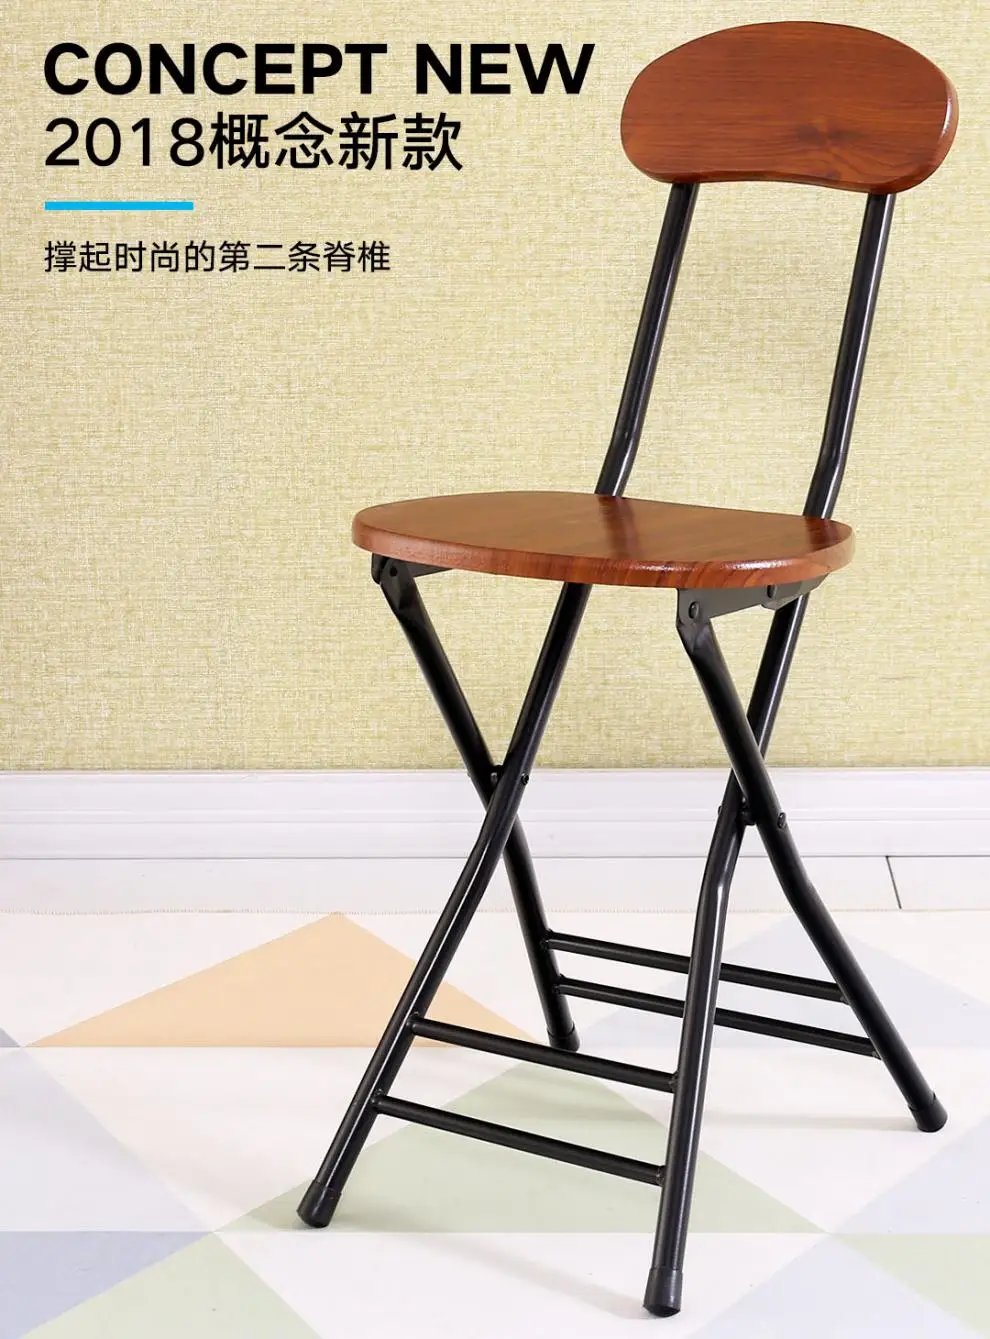 Складной малая скамья складной стул домашний обеденный стол табурет с высокой спинкой переносная креативная барная стойка Bancos Para Barra